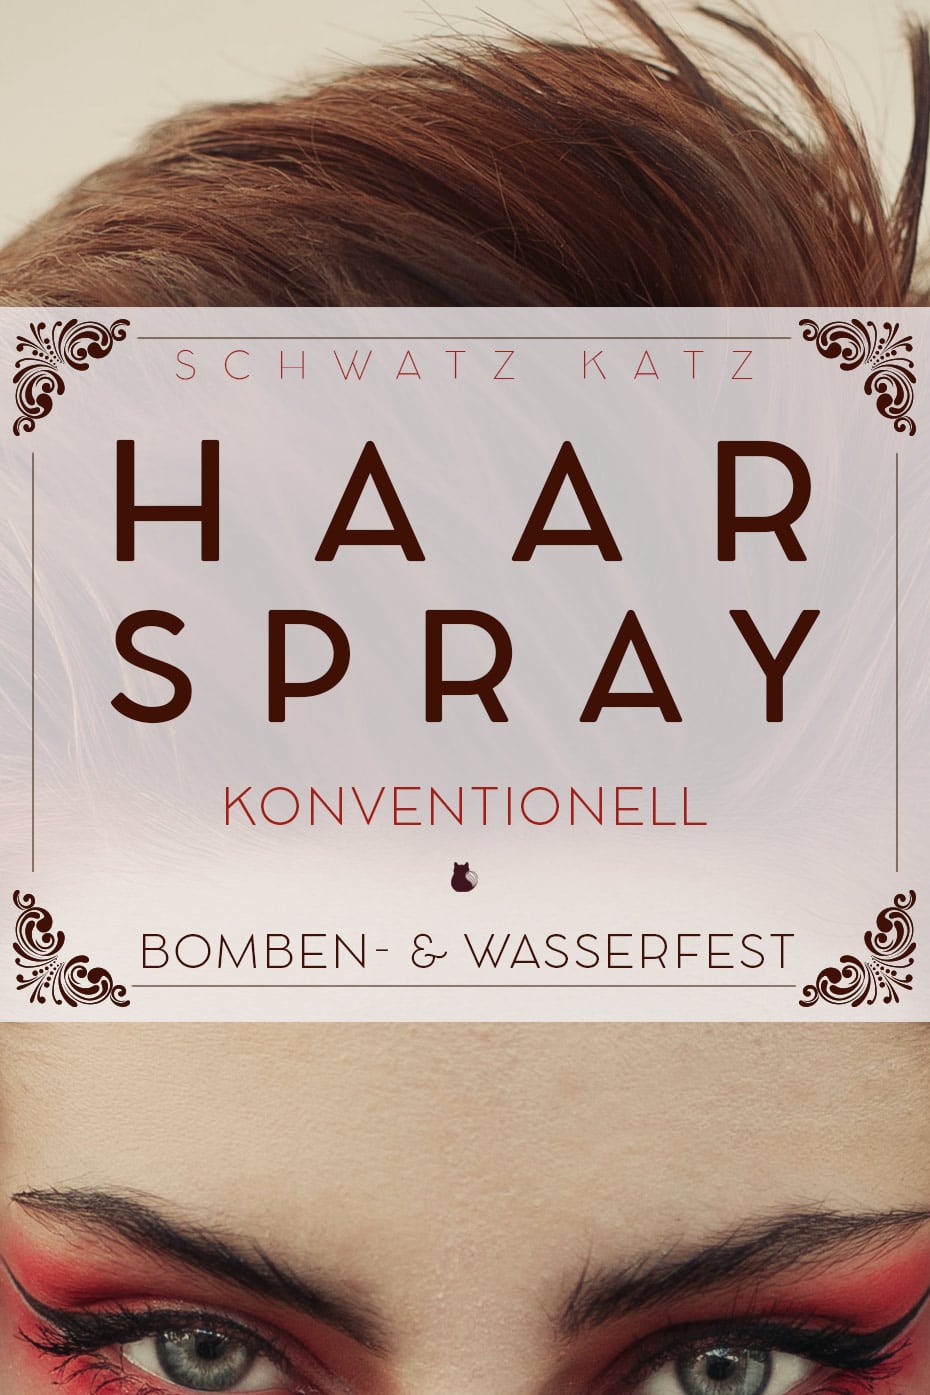 Schönes kleines Rezept für konventionelles DIY Haarspray mit Naturkosmetikzauber | Schwatz Katz